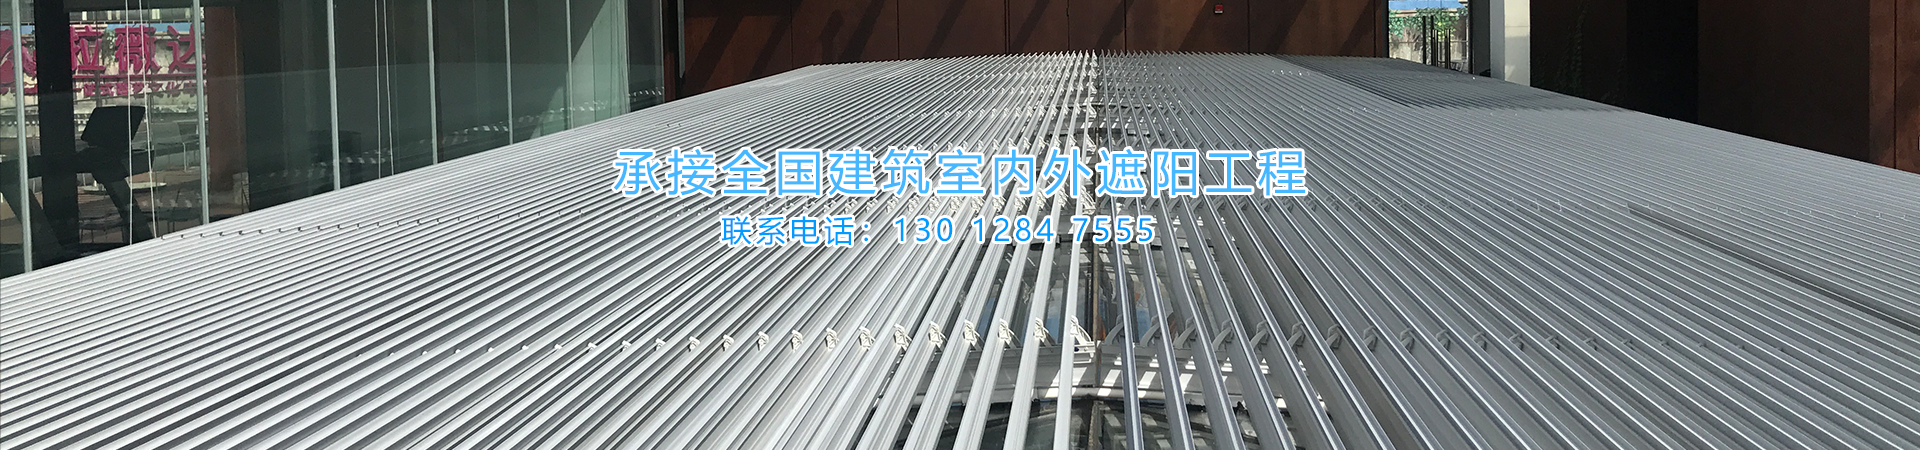 上海凉度智能遮阳技术有限公司